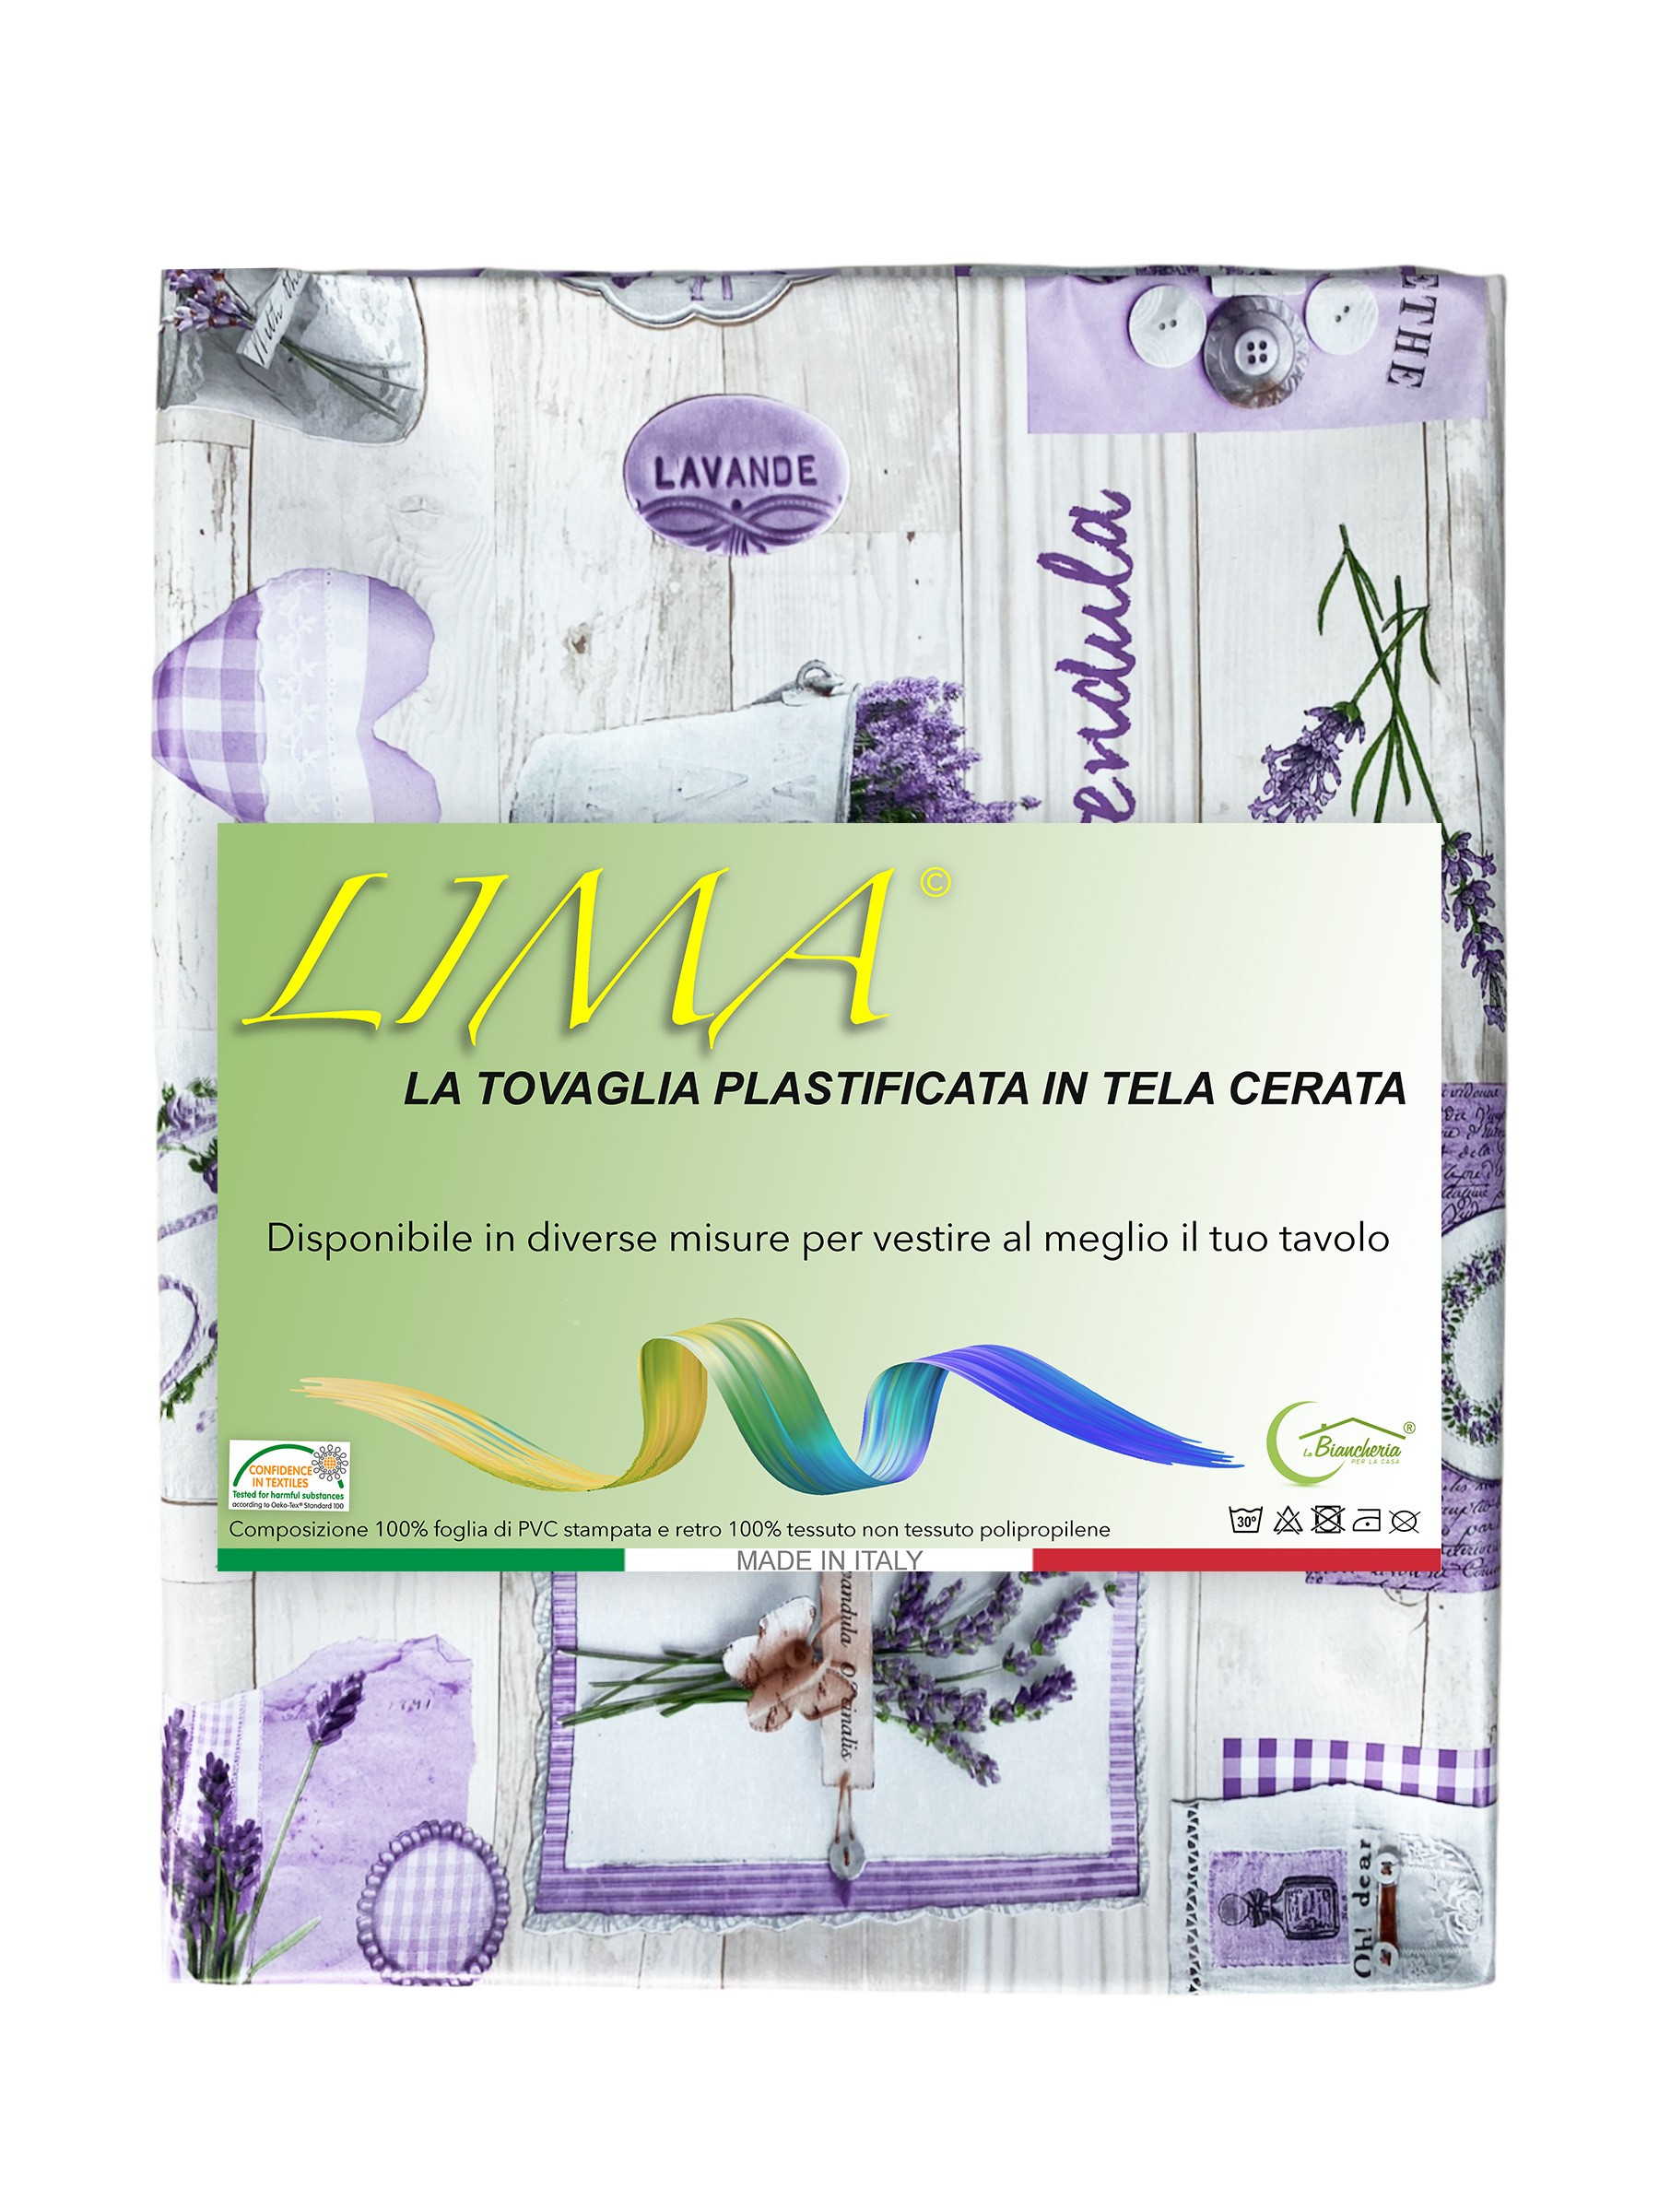 TOVAGLIA LIMA © in TELA CERATA plastificata LAVABILE idrorepellente in PVC  LAVANDA made in Italy Misura Tovaglia Cm. 140x100 x4 persone